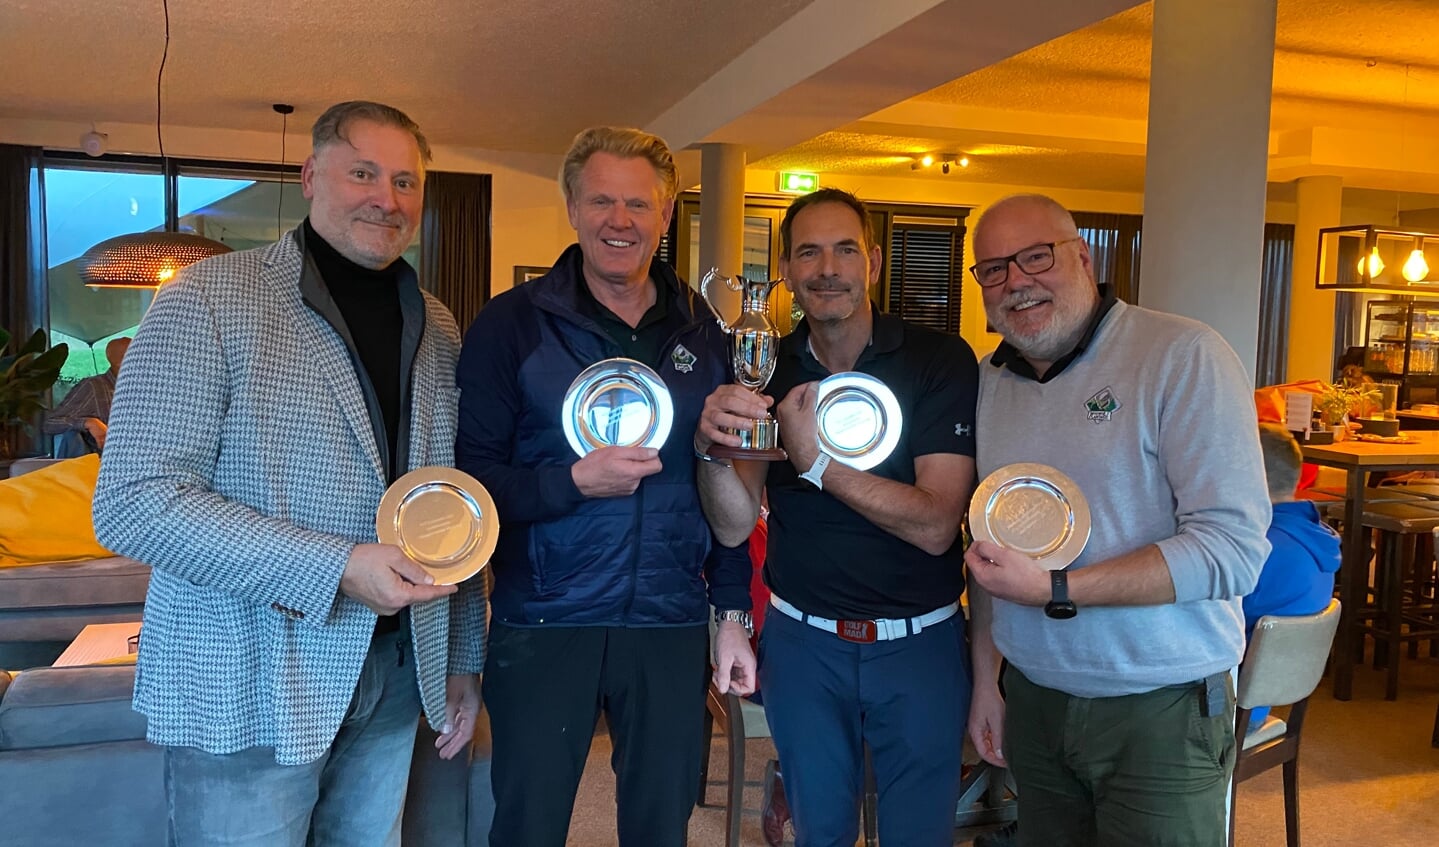 NGF-najaarscompetitie bij de Keppelse Golfclub is gewonnen door het viertal van de Golfclub Wouwse Plantage. Foto: PR